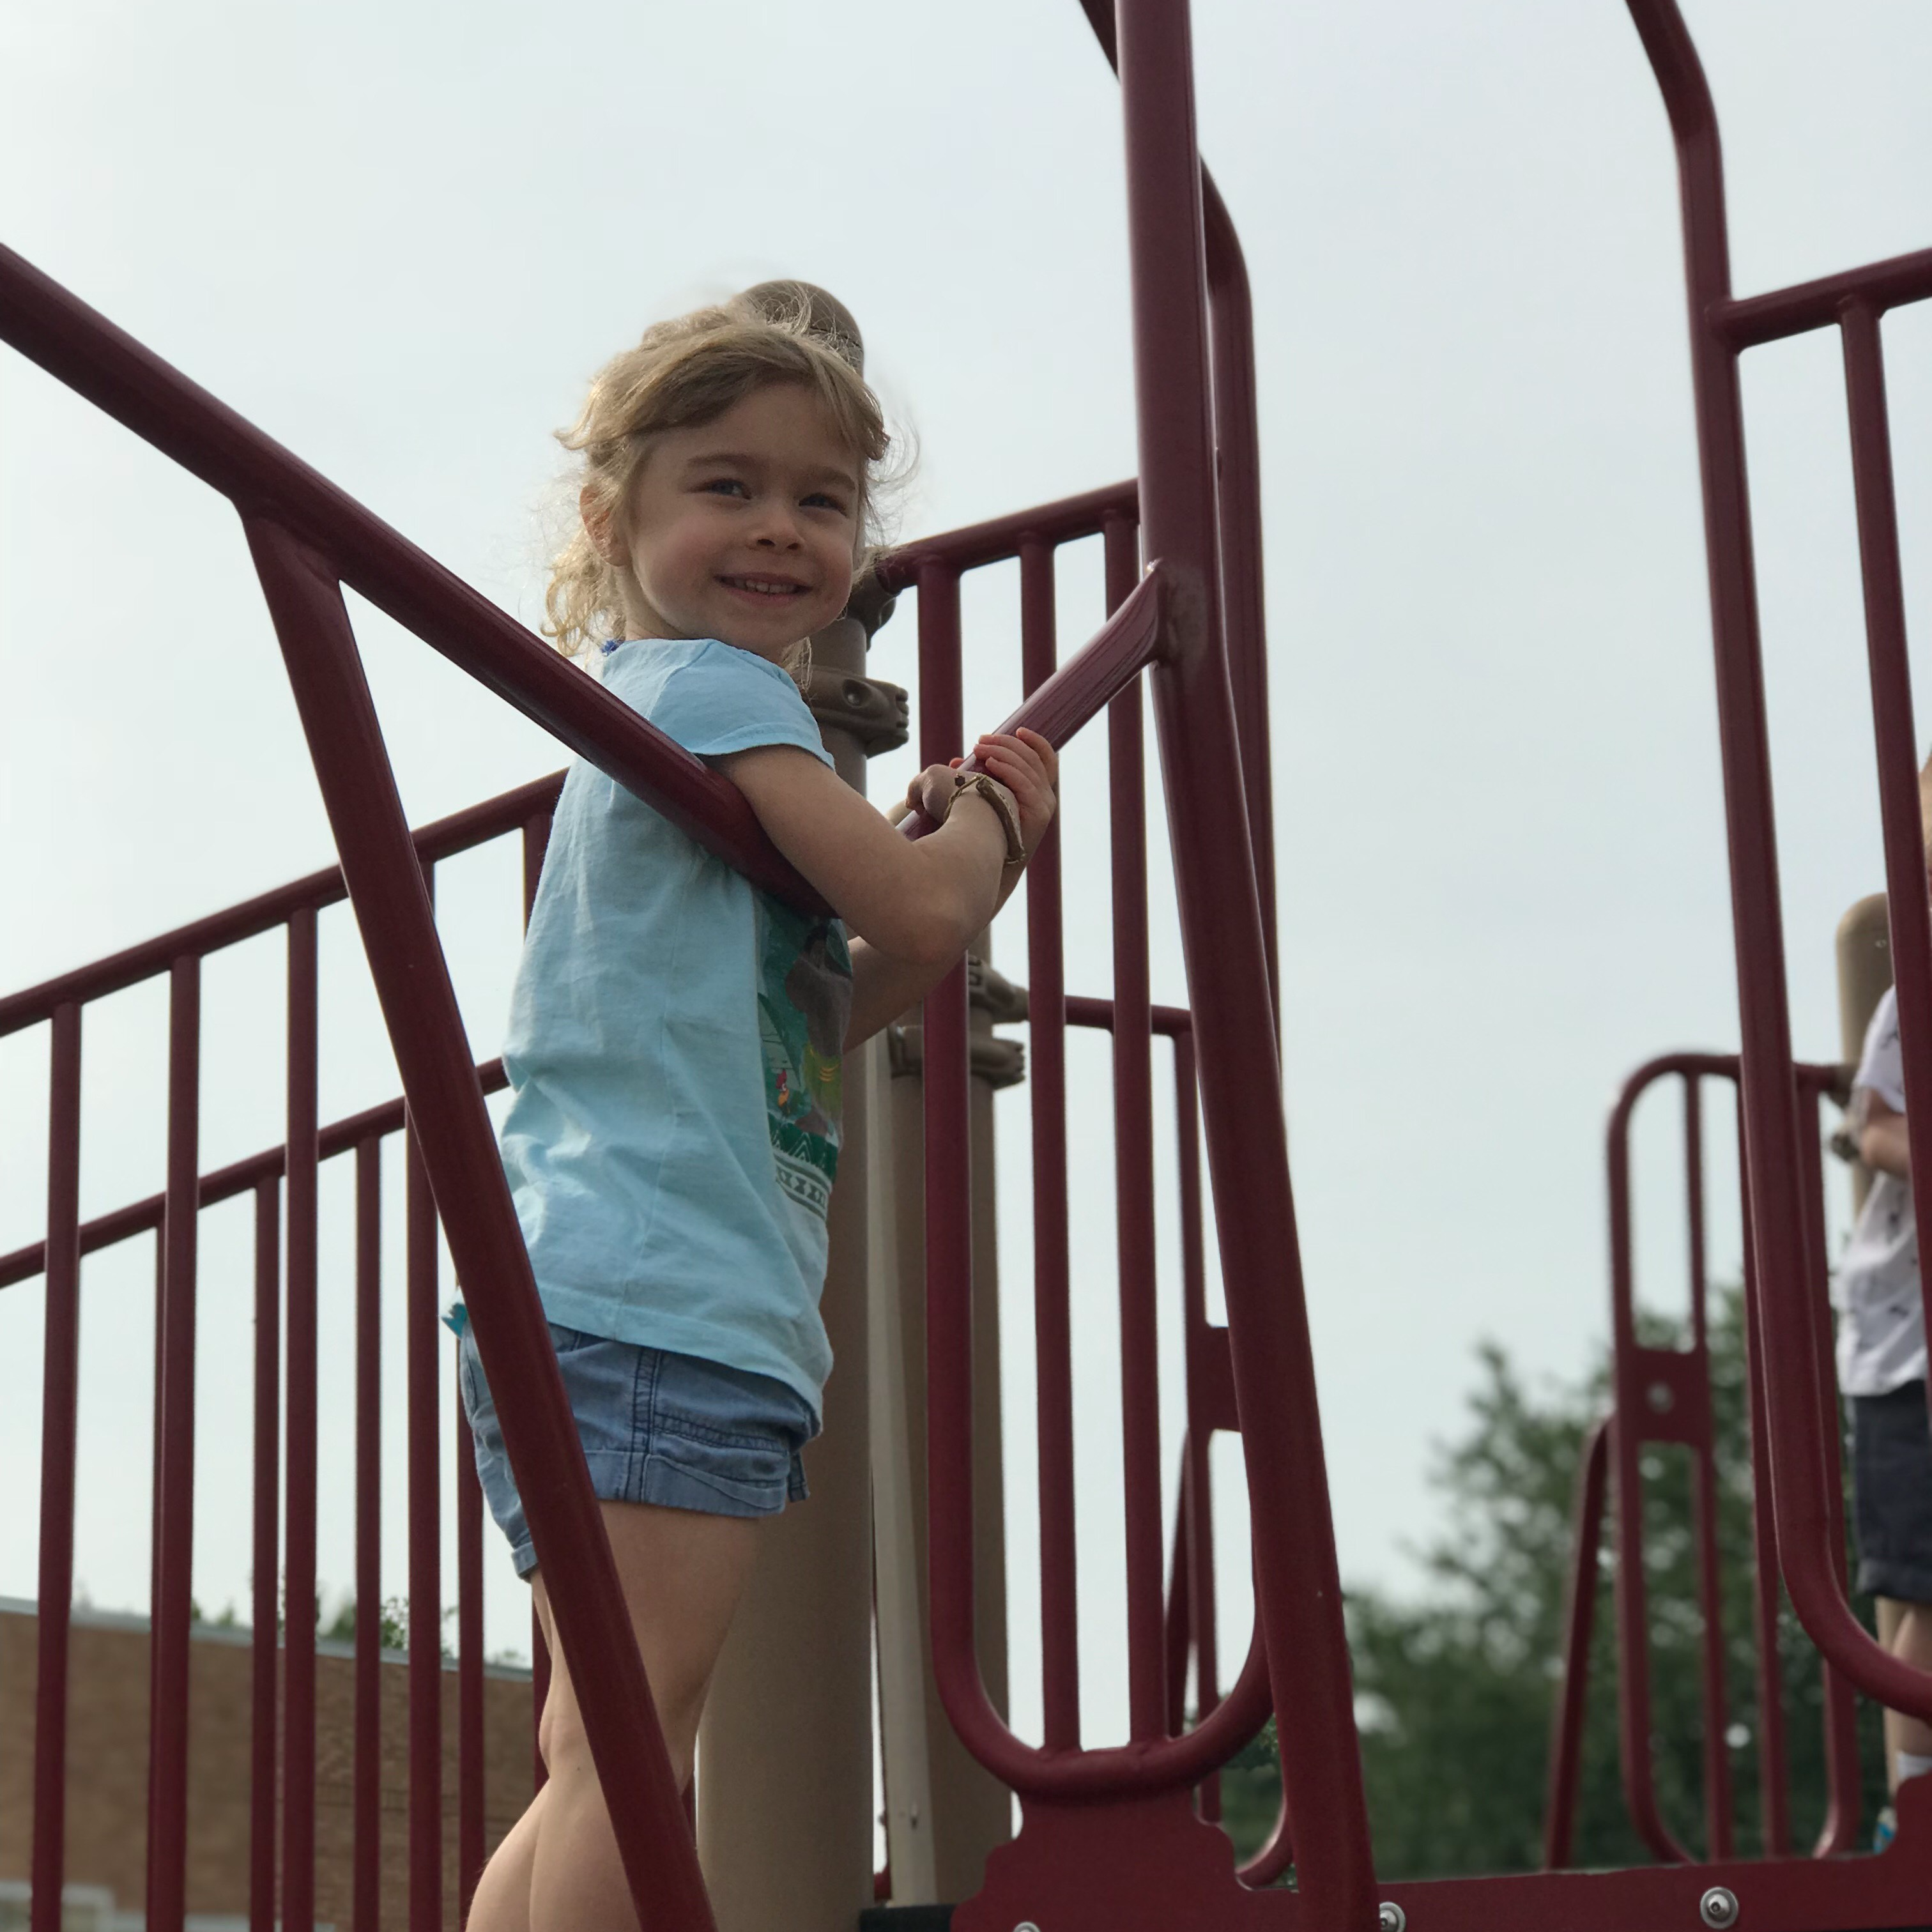 child posing on playground equipment